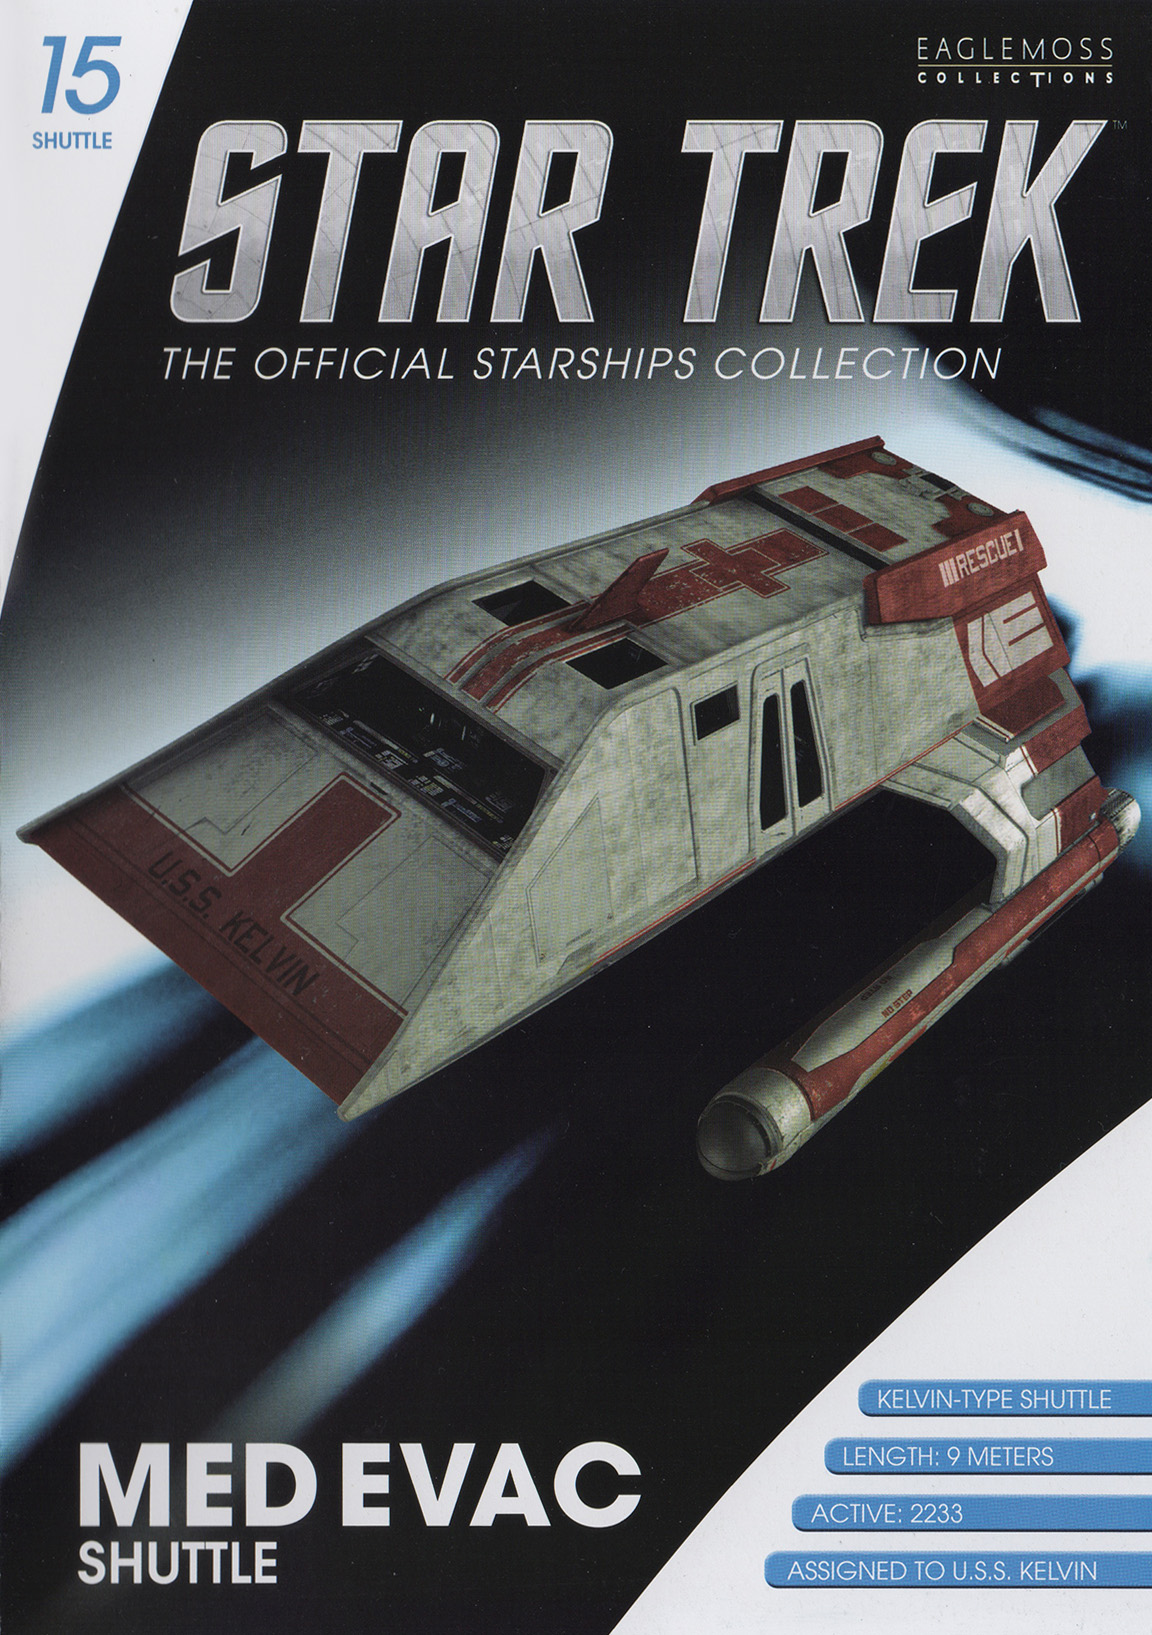 Star Trek Type-15 shuttle #8 from the U.S.S Enterprise NCC-1701-D Eaglemoss eng 